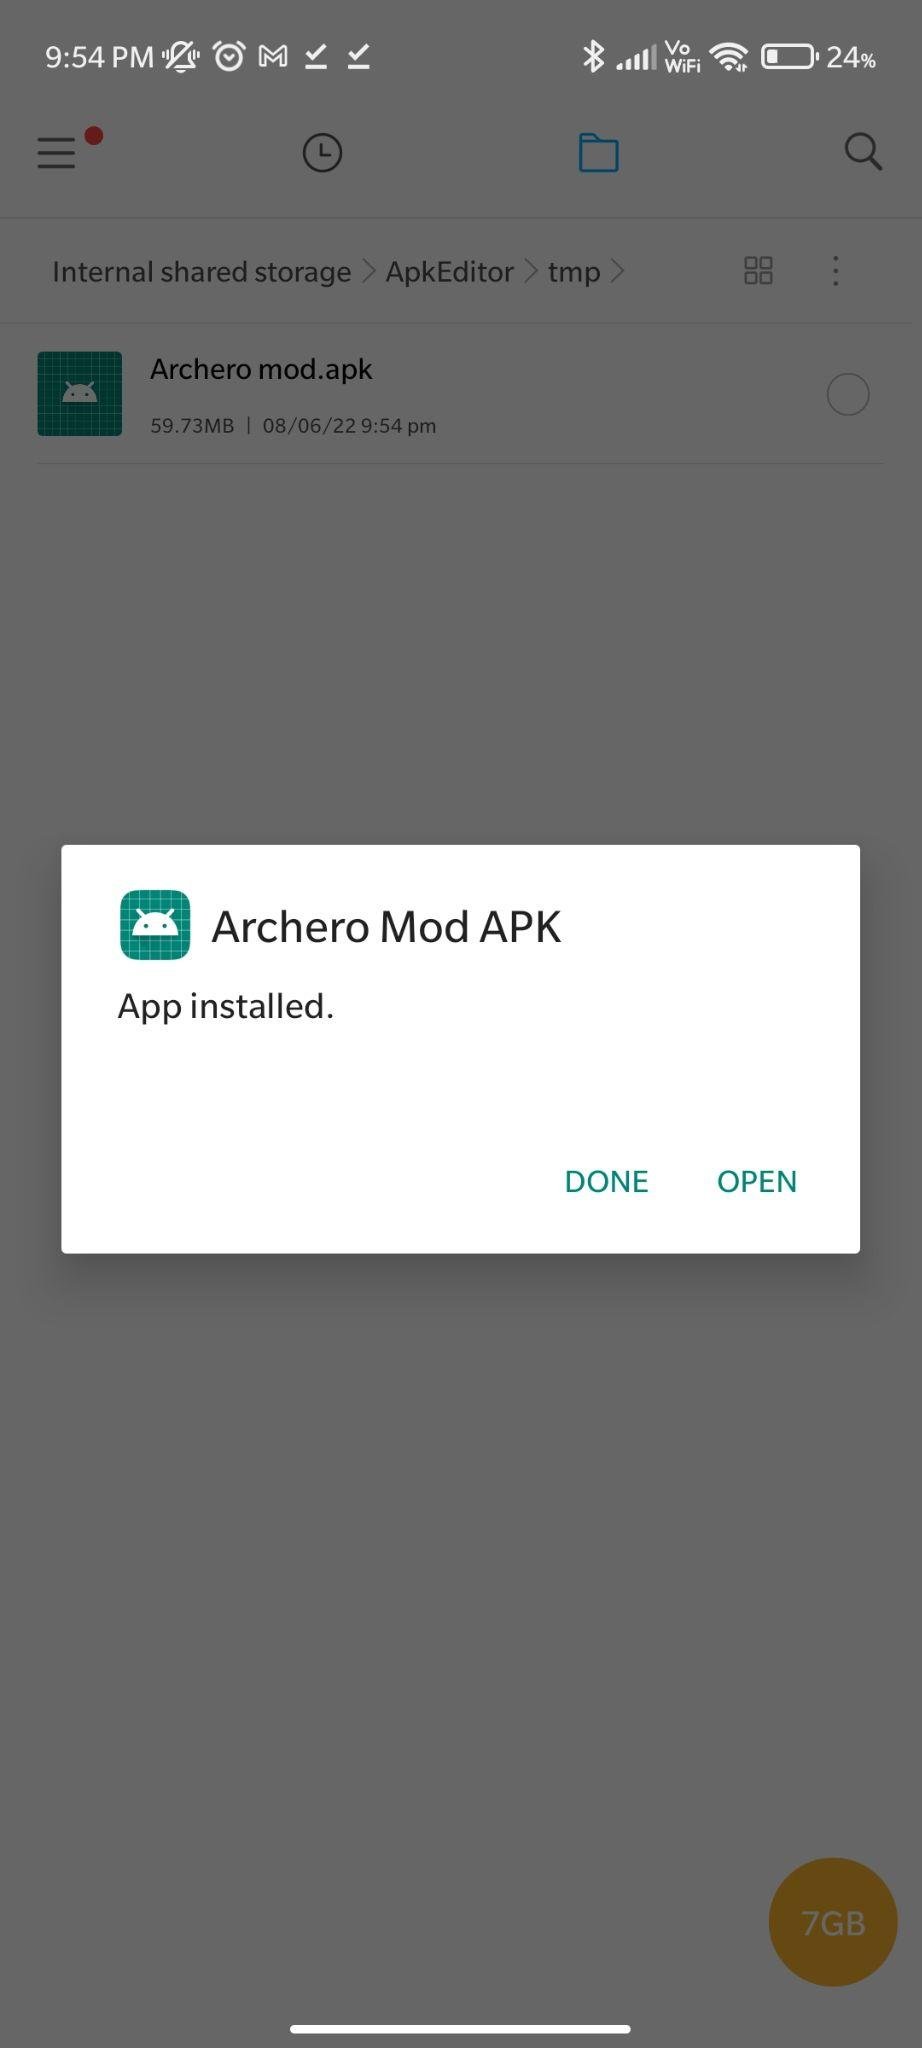 archery mod apk installed